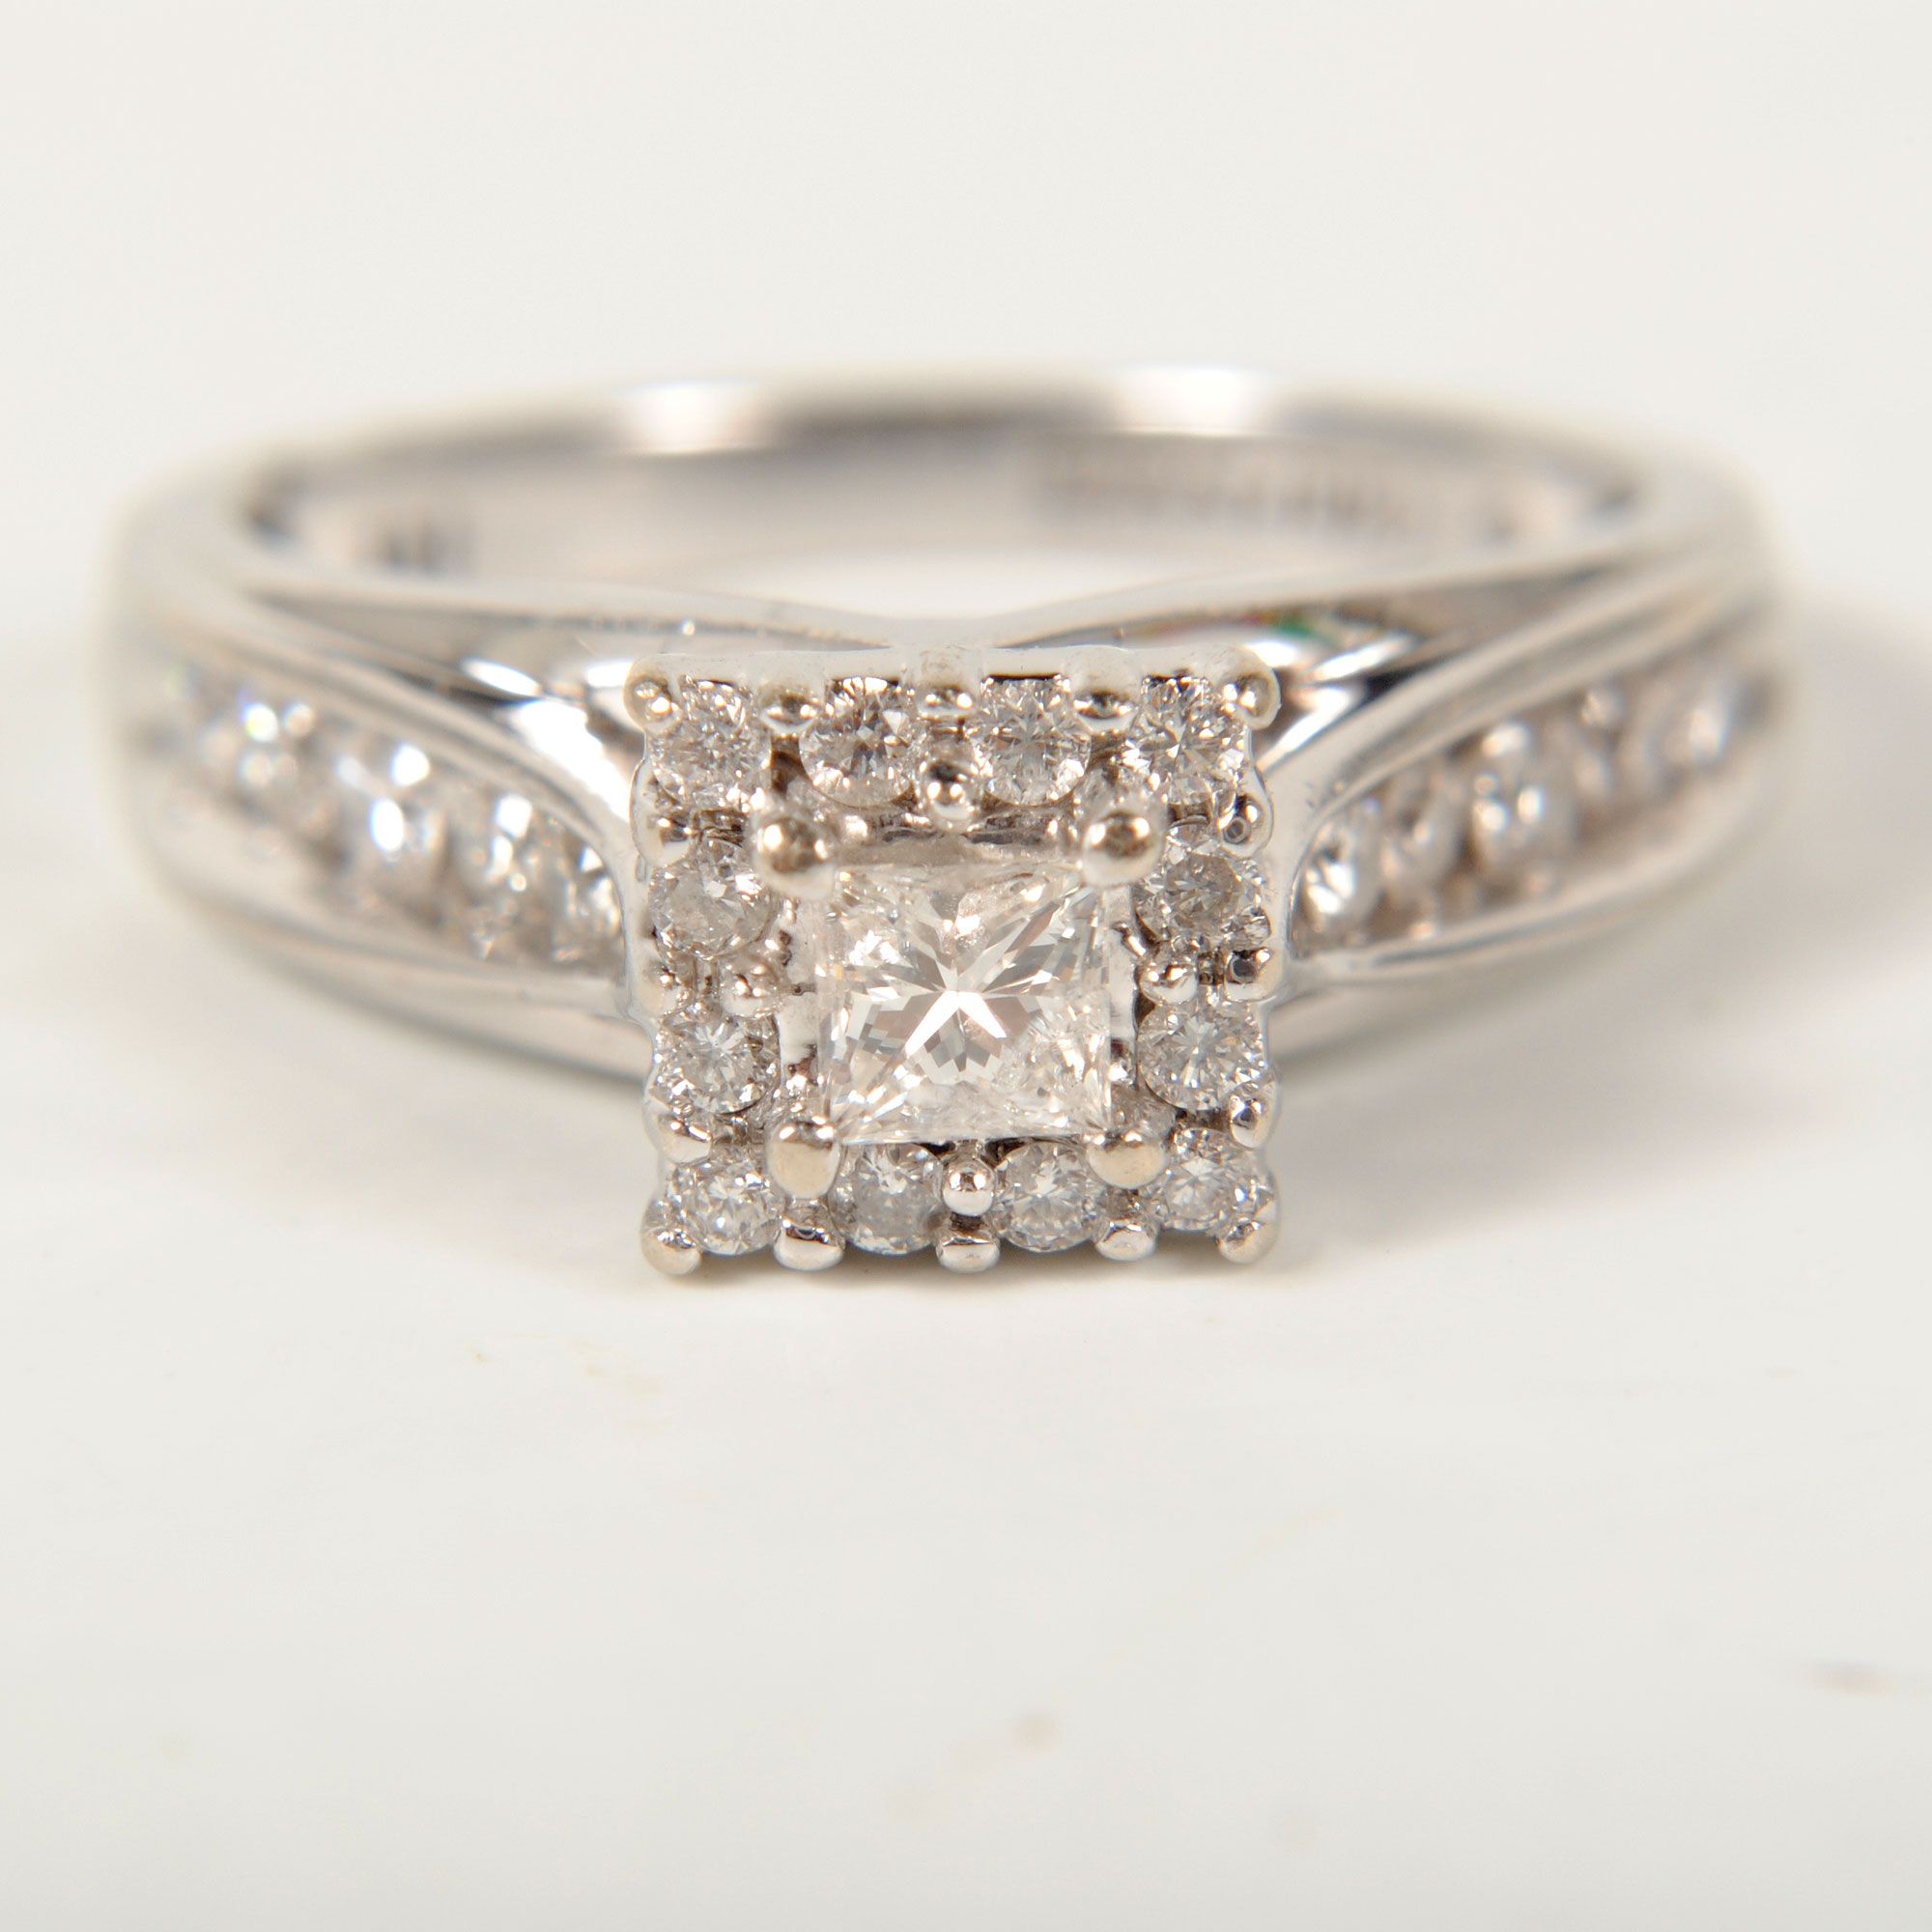 Ladies 14k White Gold Keepsake Diamond Engagement Ring 1cttw Size 7